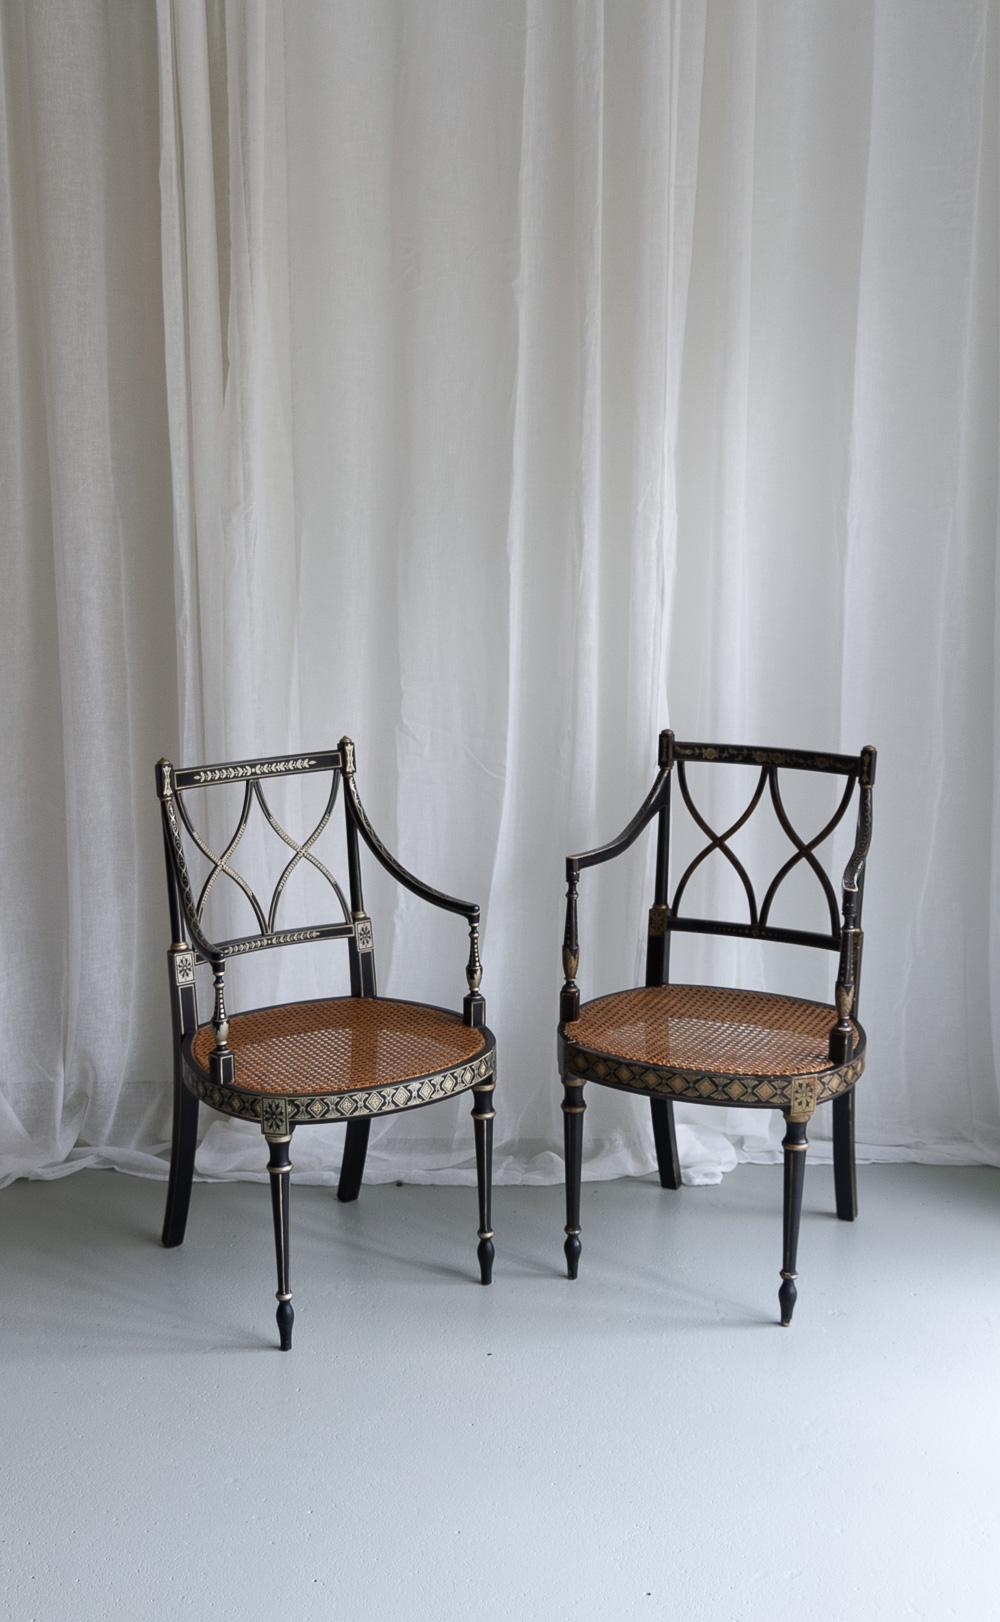 Ebonisierte Rohrsessel im Regency-Stil, 2er-Set.
Ein Paar schwarz lackierte englische Stühle im Regency-Stil mit Rohrsitz und handgemalten Goldmotiven, um 1970.
Ein Stuhl hat etwas mehr Patina und eine handgeflochtene Sitzfläche und könnte daher